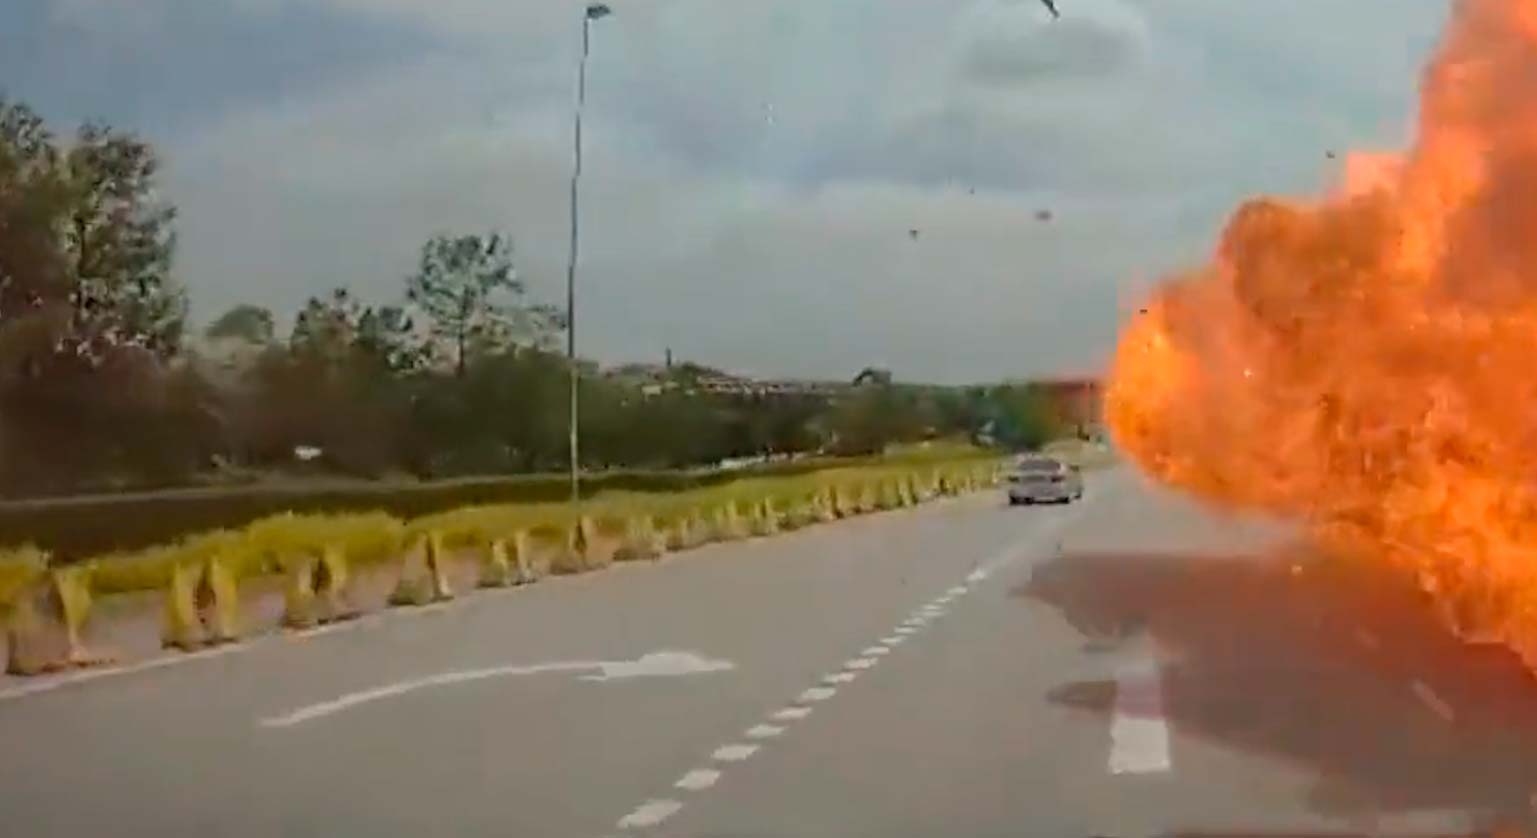 Vídeo: Avião cai sobre carro e moto em rodovia, explode e mata 10 pessoas